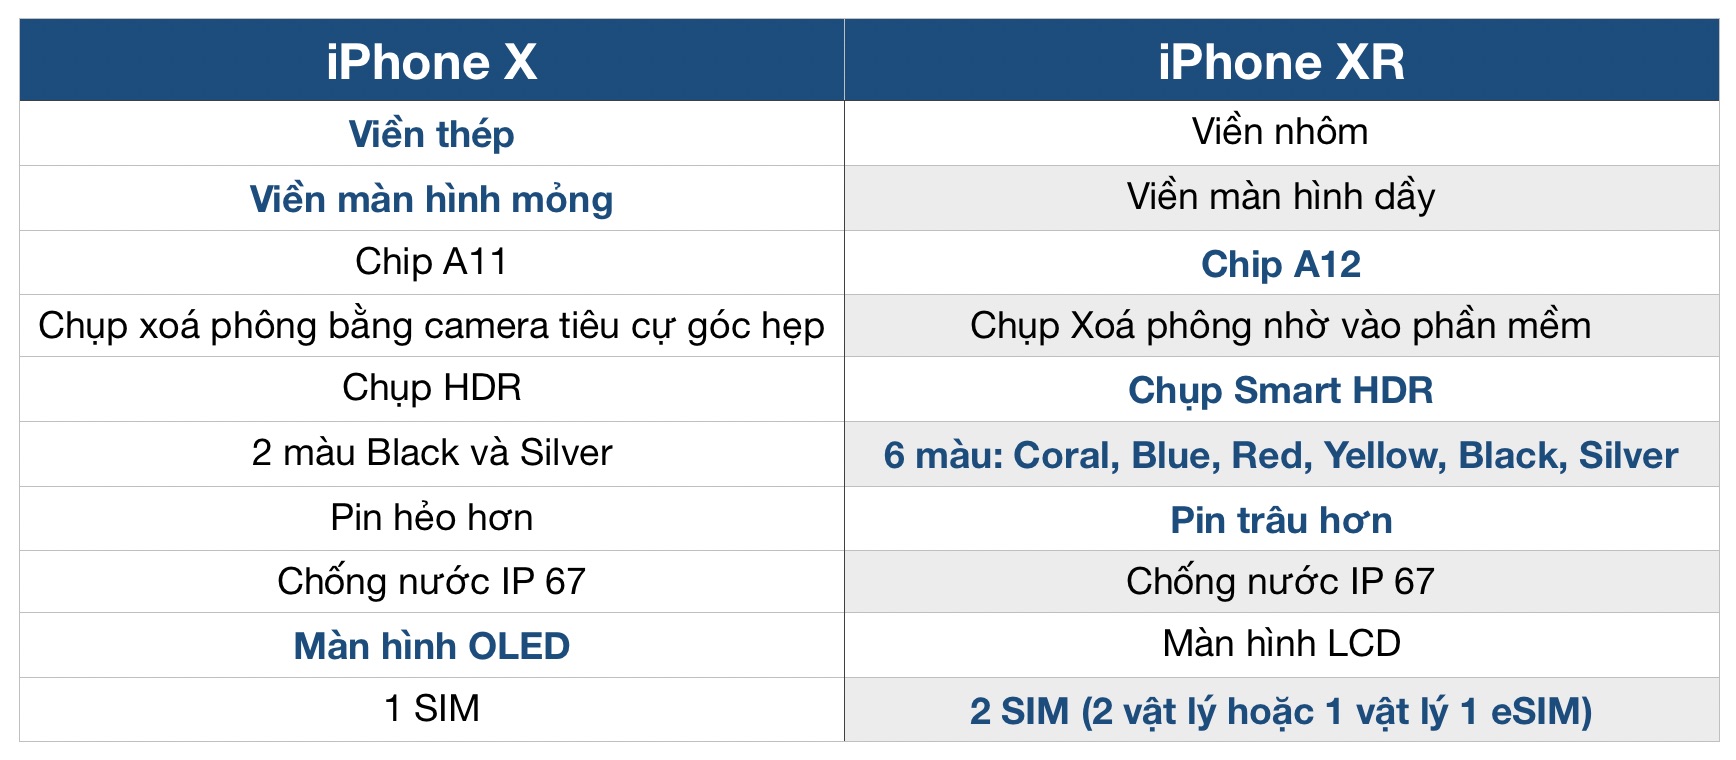 iPhoneX_vs_iPhoneXR_Tinhte.jpg